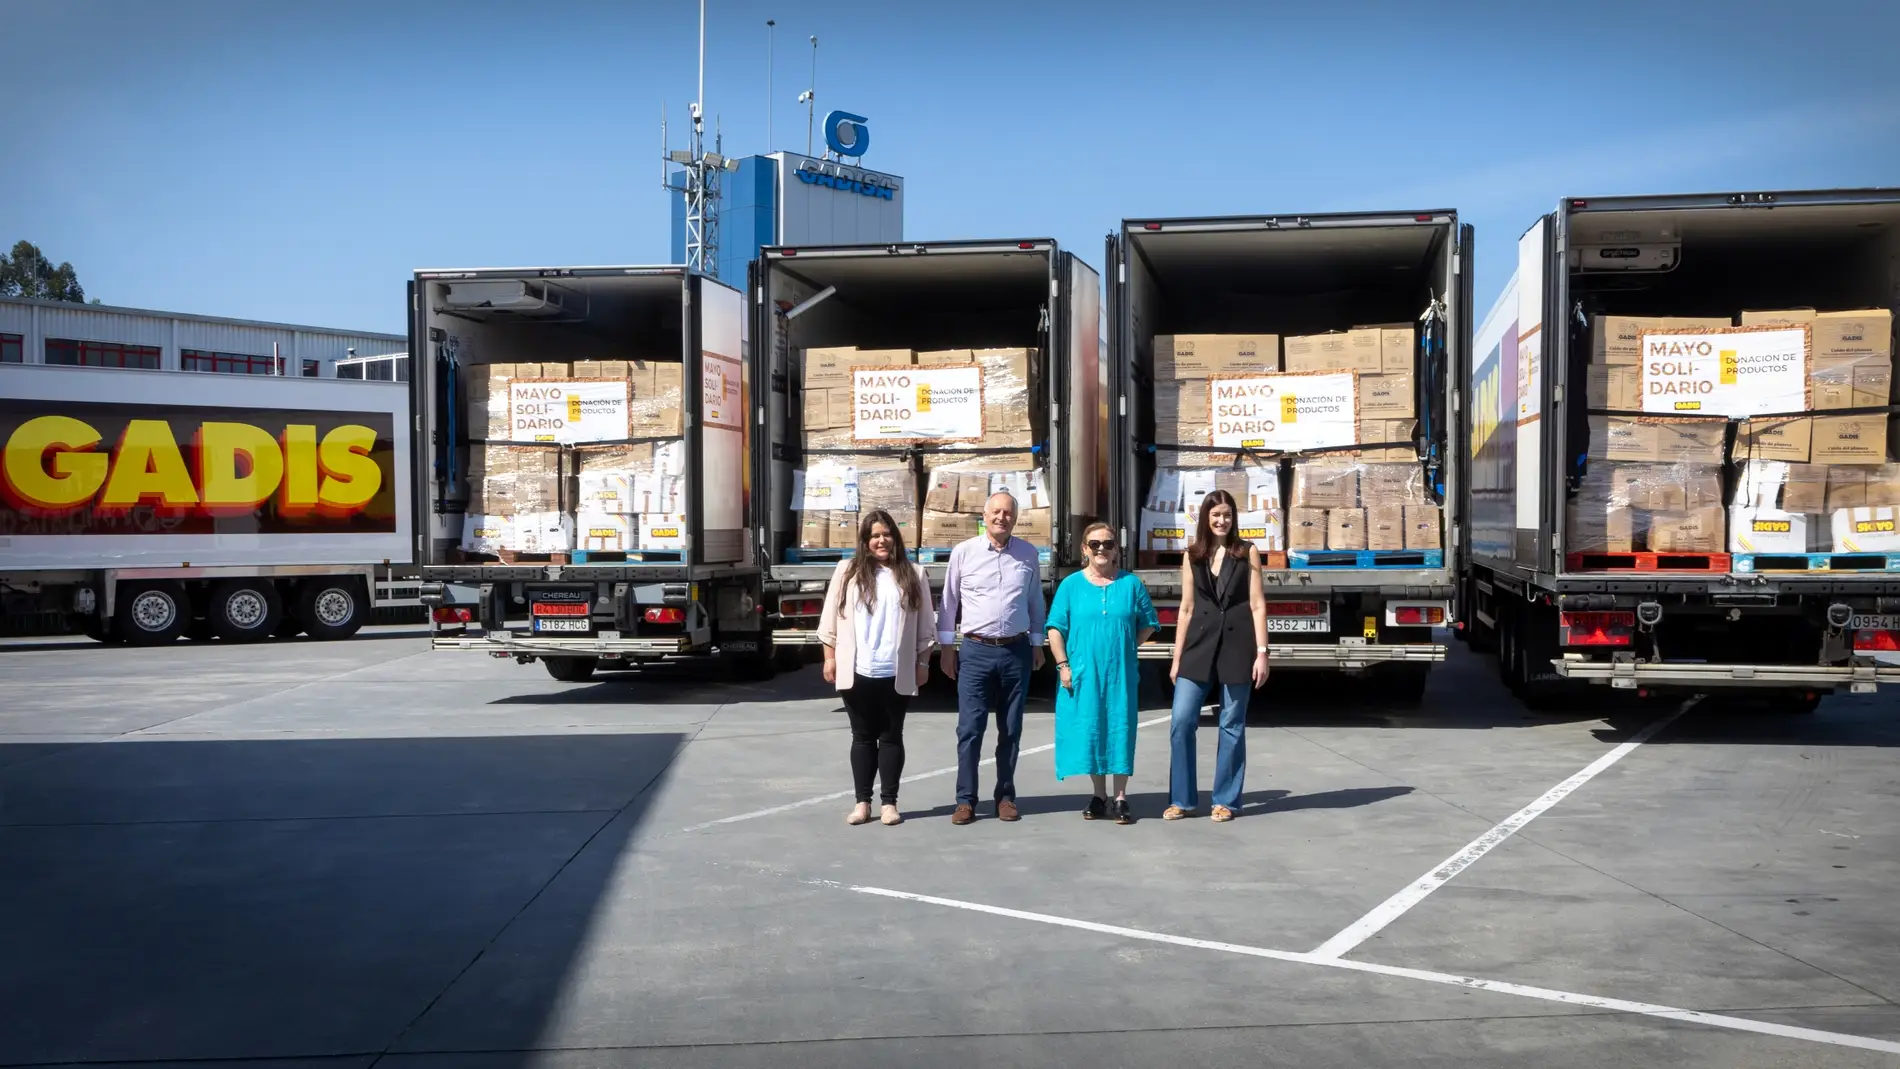 Gadis entrega 109.808 quilos de productos a once bancos de alimentos